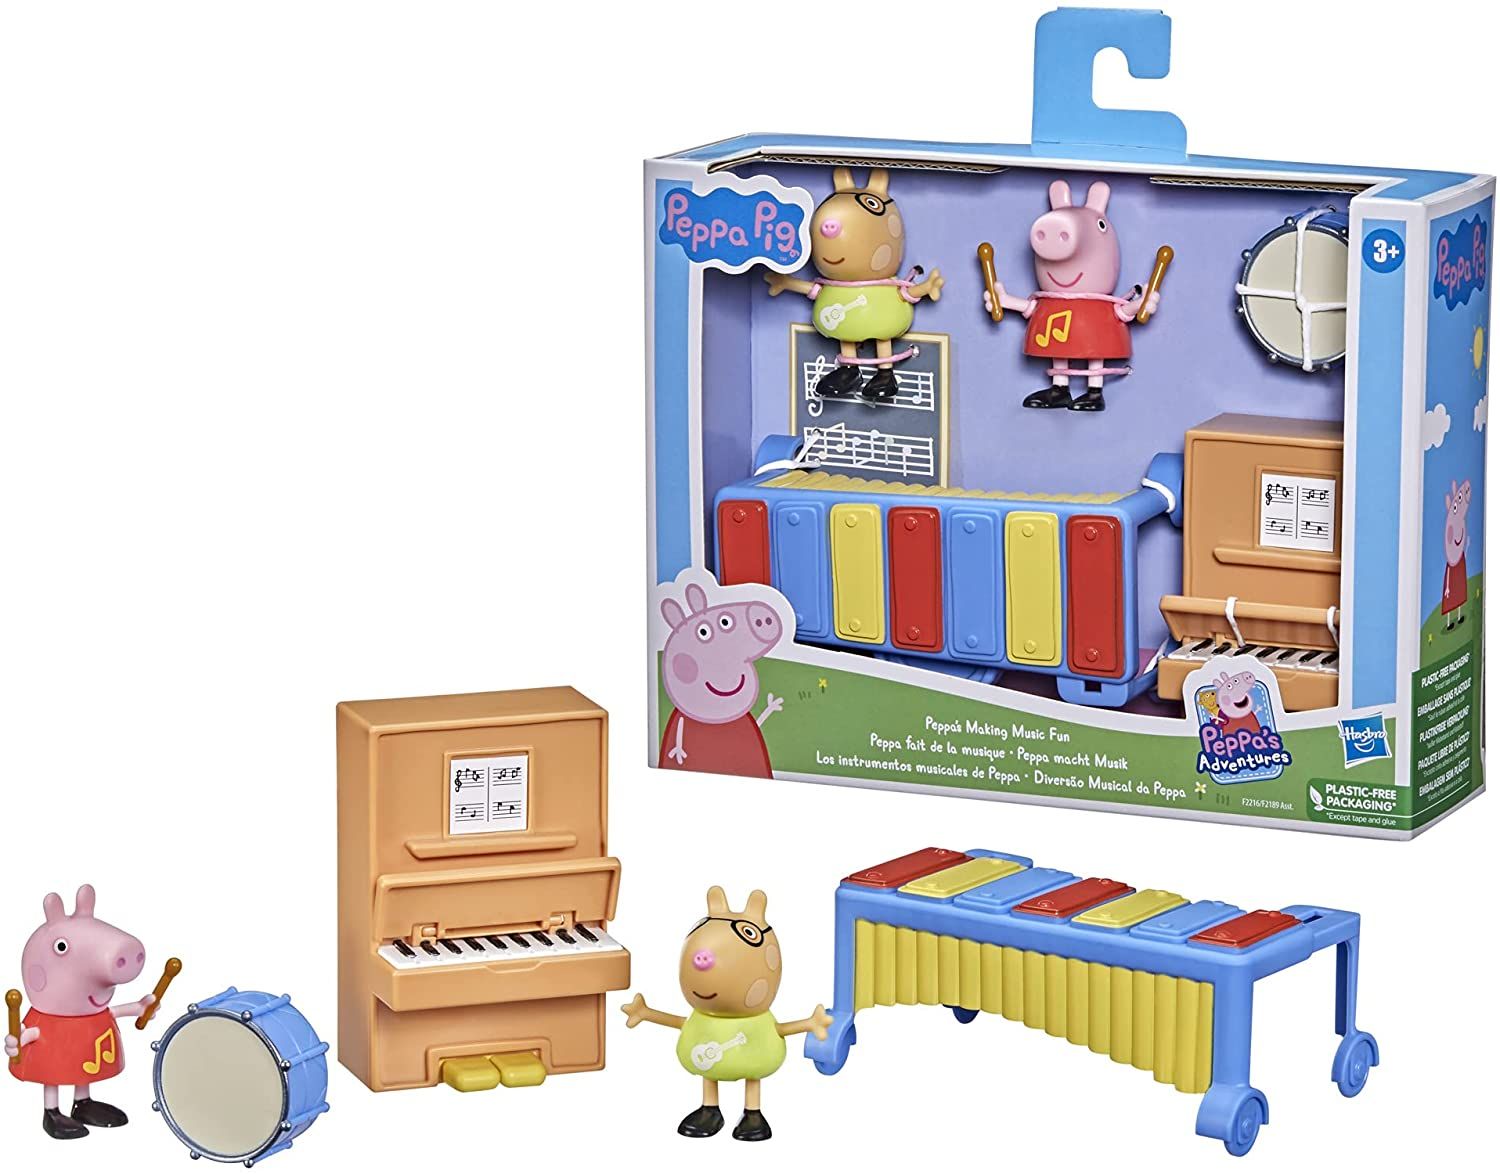 Peppa Pig - Peppas Making Music Fun Playset